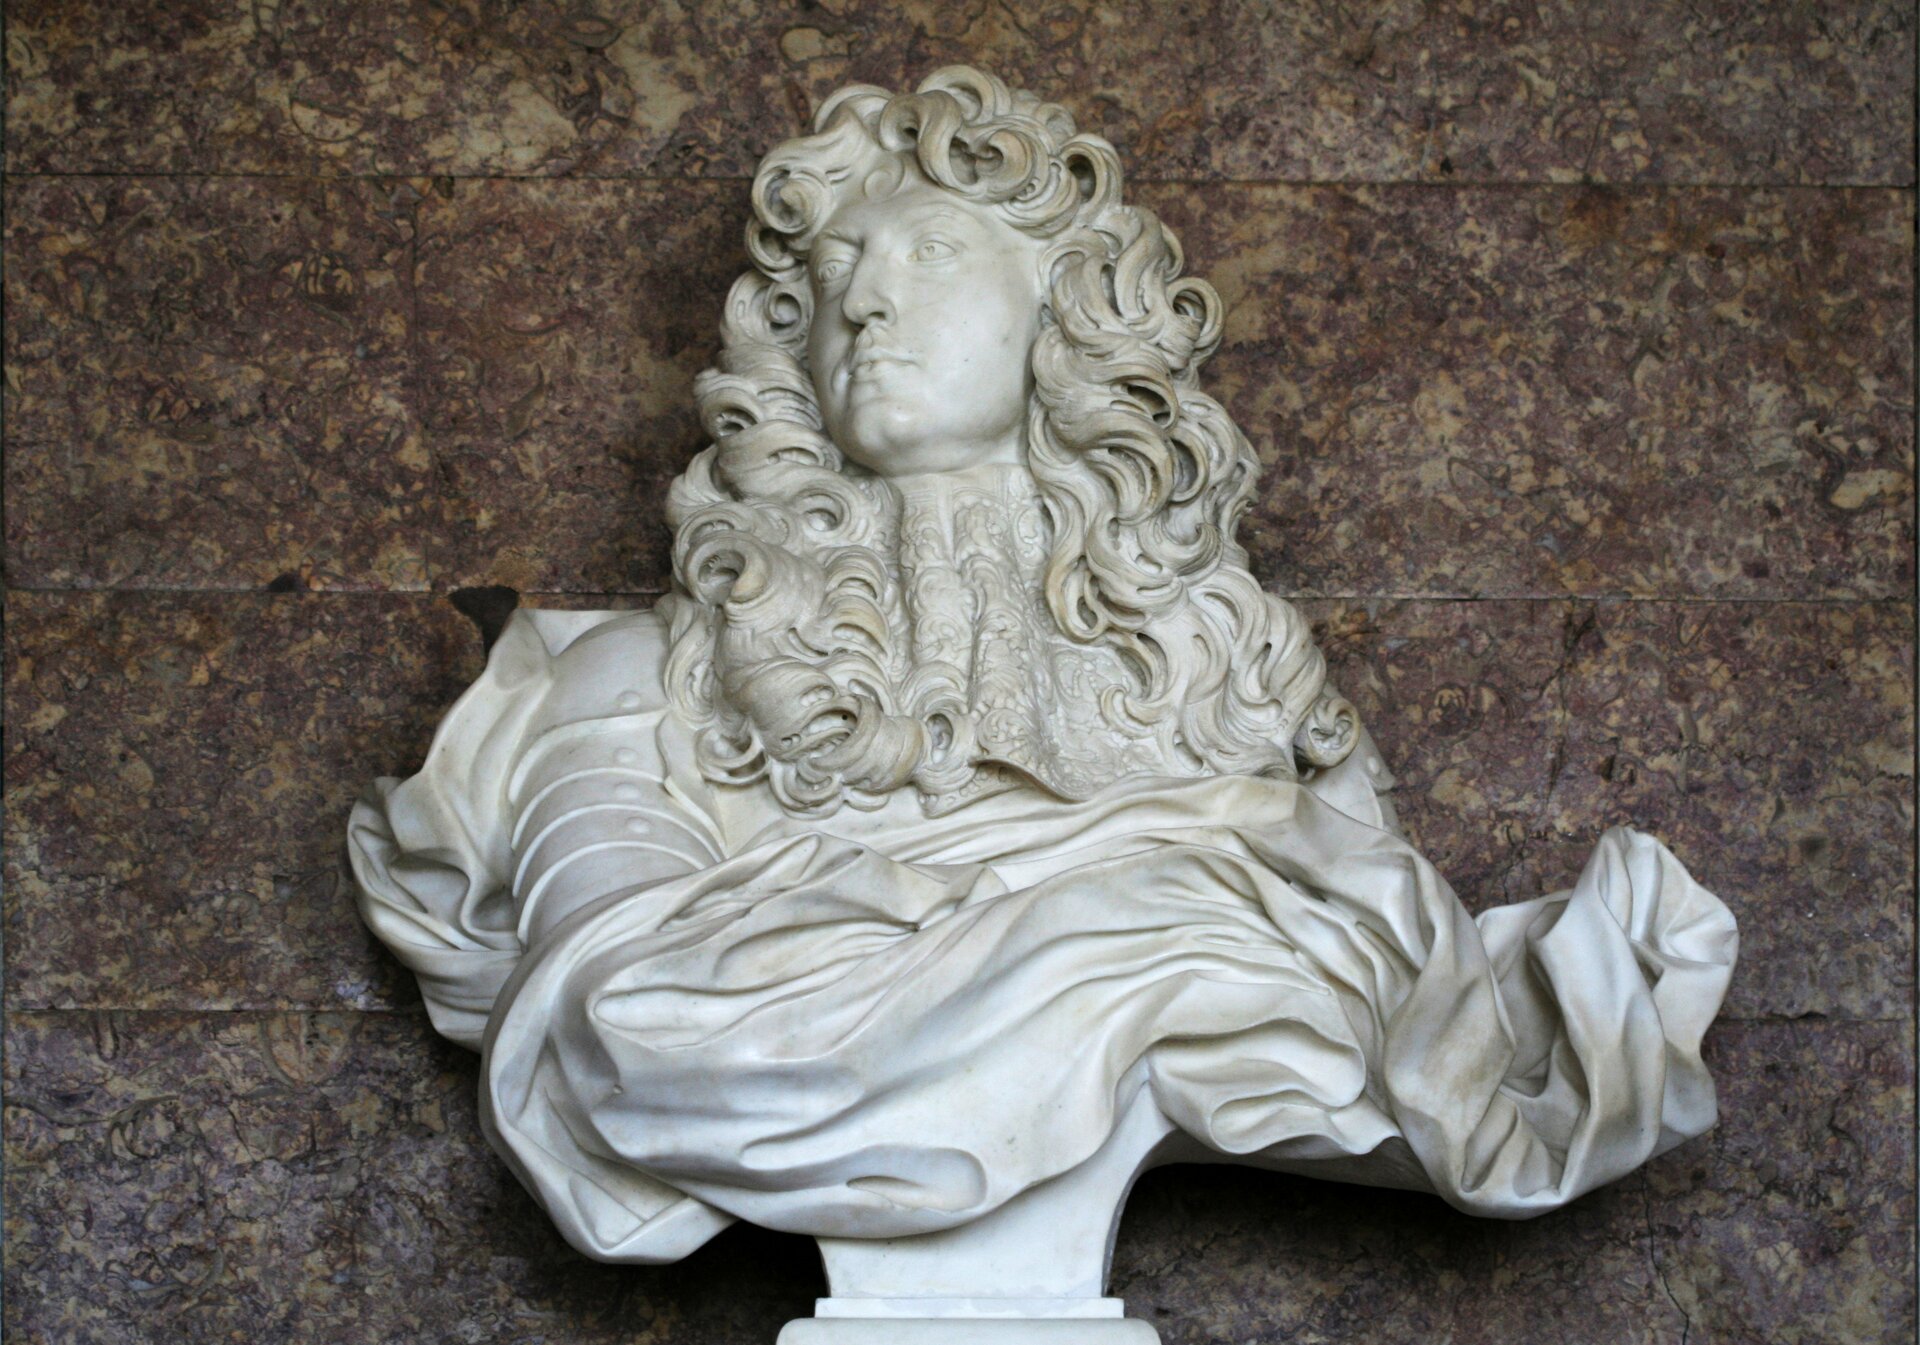 Ilustracja przedstawia rzeźbę „Popiersie Ludwika XIV” autorstwa Gian Lorenzo Berniniego. Wykonane z białego marmuru dzieł ukazuje mężczyznę w średnim wieku z długimi, kręconymi włosami spływającymi na ramiona. Postać ubrana jest w zbroję, którą okrywa dynamicznie wyrzeźbiona, pofałdowana draperia. Pod szyją znajduje się misternie wykonany, koronkowy żabot. Głowa mężczyzny zwrócona jest w prawą stronę. Popiersie wyrzeźbione jest na zwężającym się ku dołowi postumencie. 